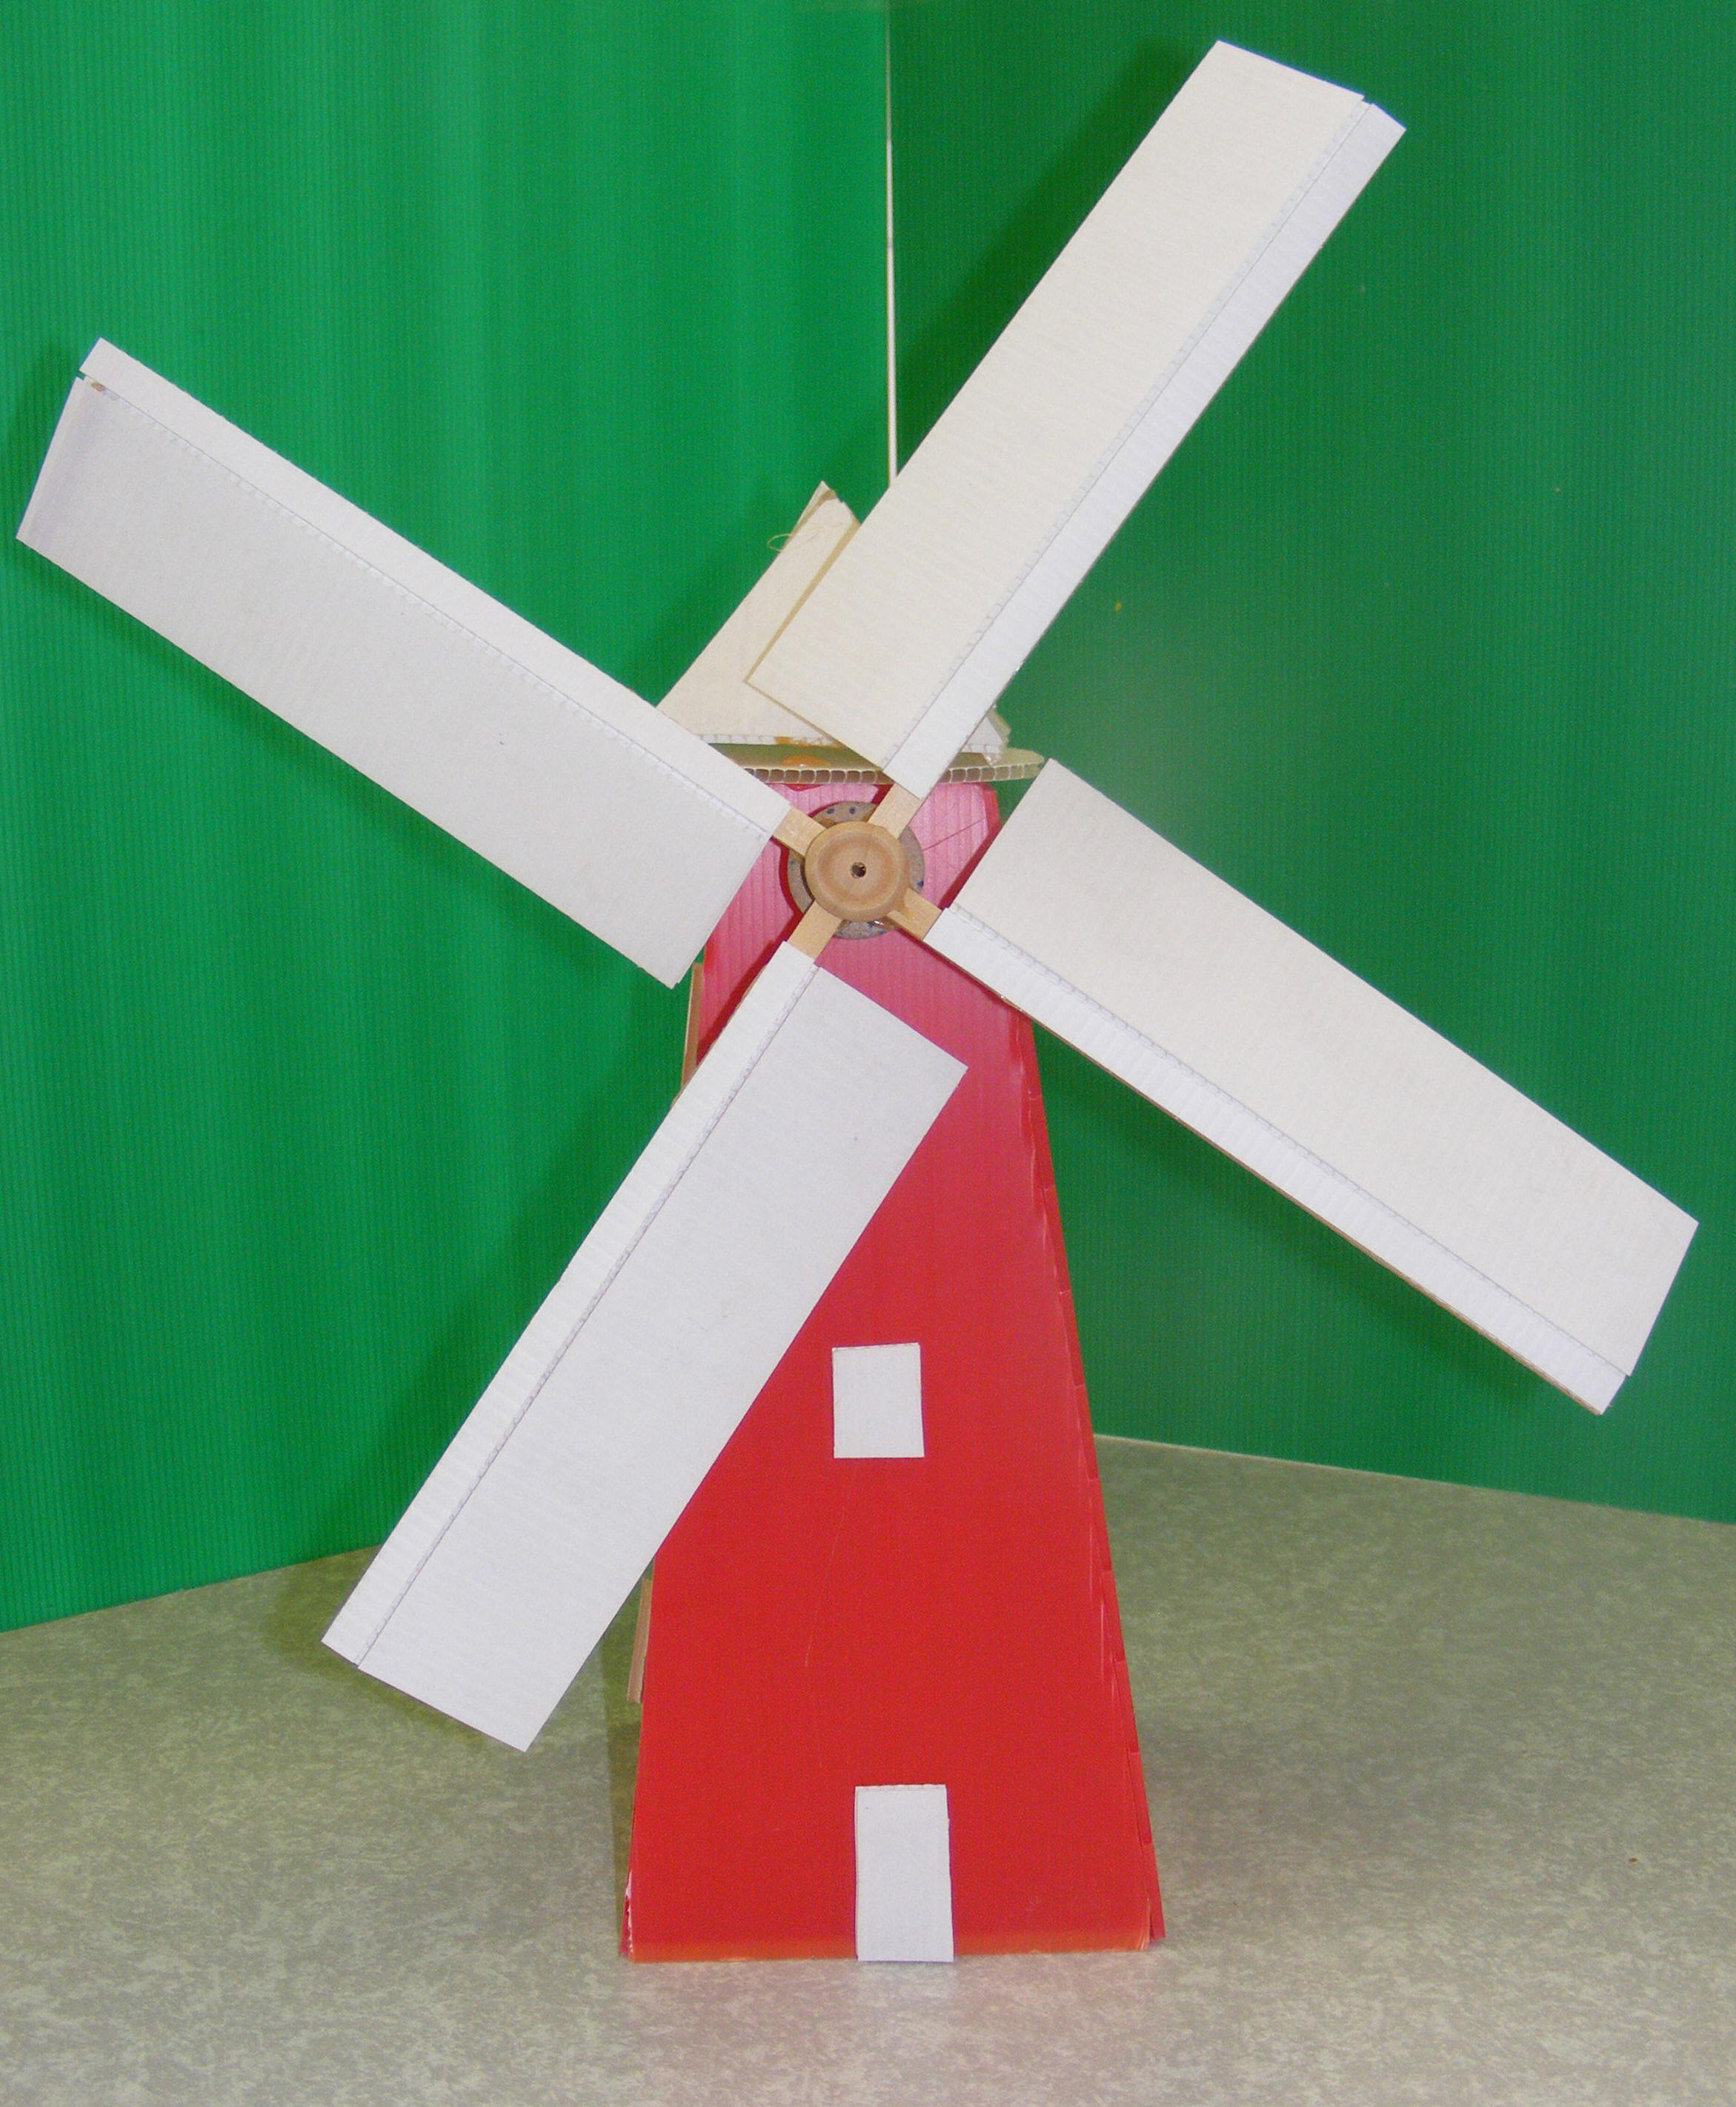 Model Windmills: